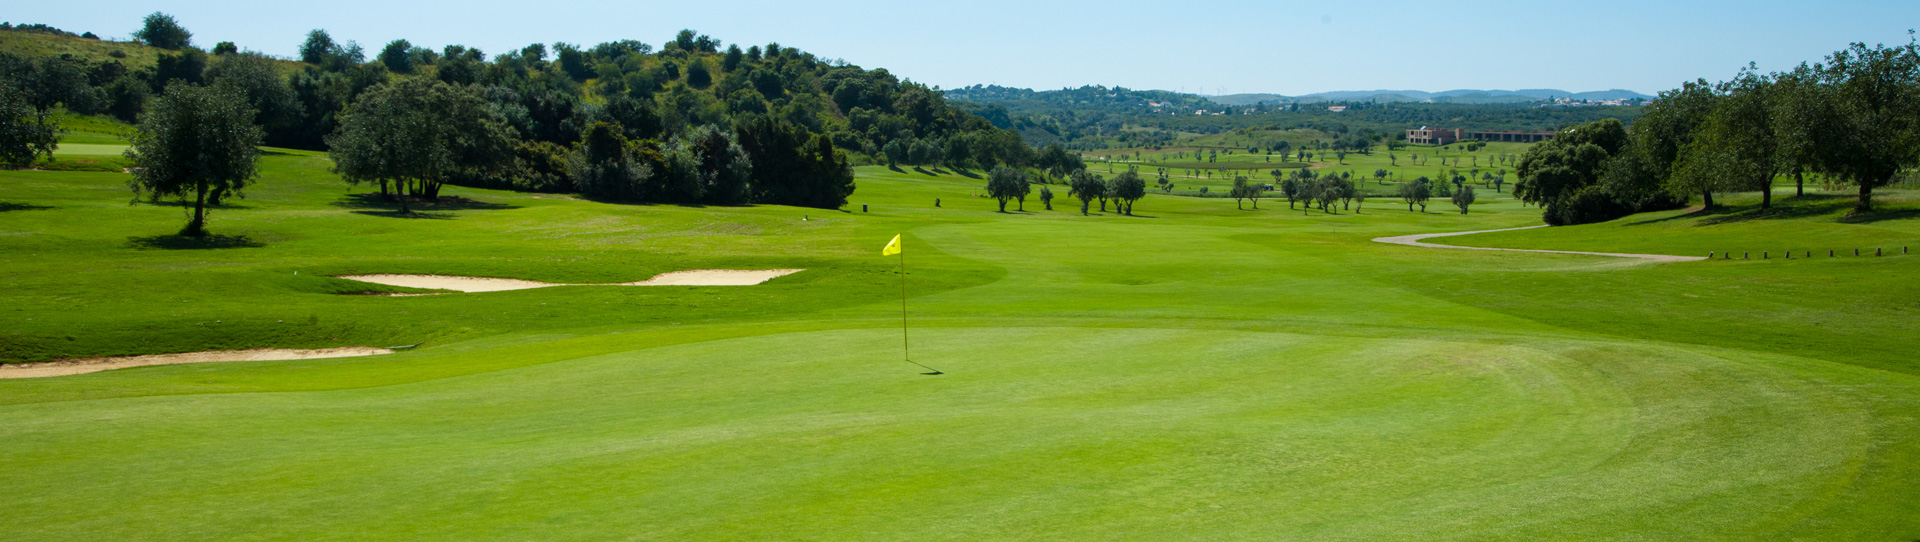 Portugal golf holidays - Salgados & Morgado & Alamos - Photo 1